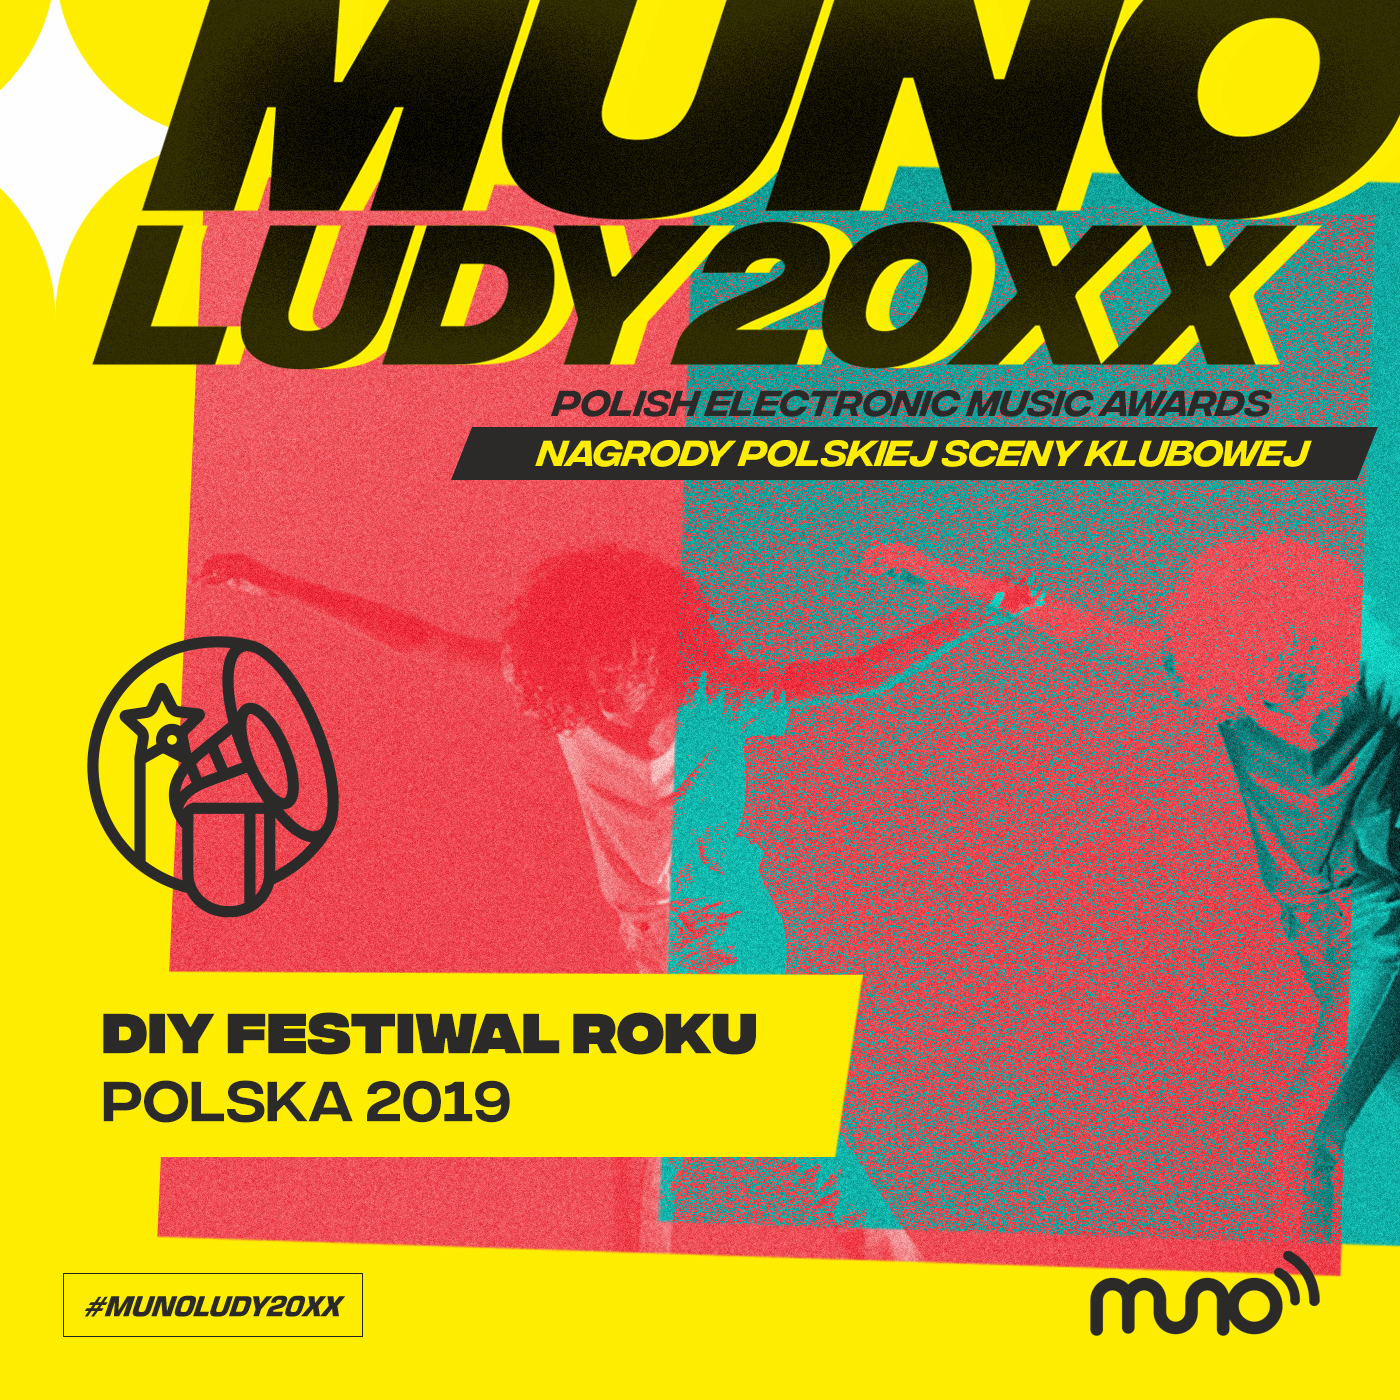 Munoludy20XX DIY Festiwal Roku Polska